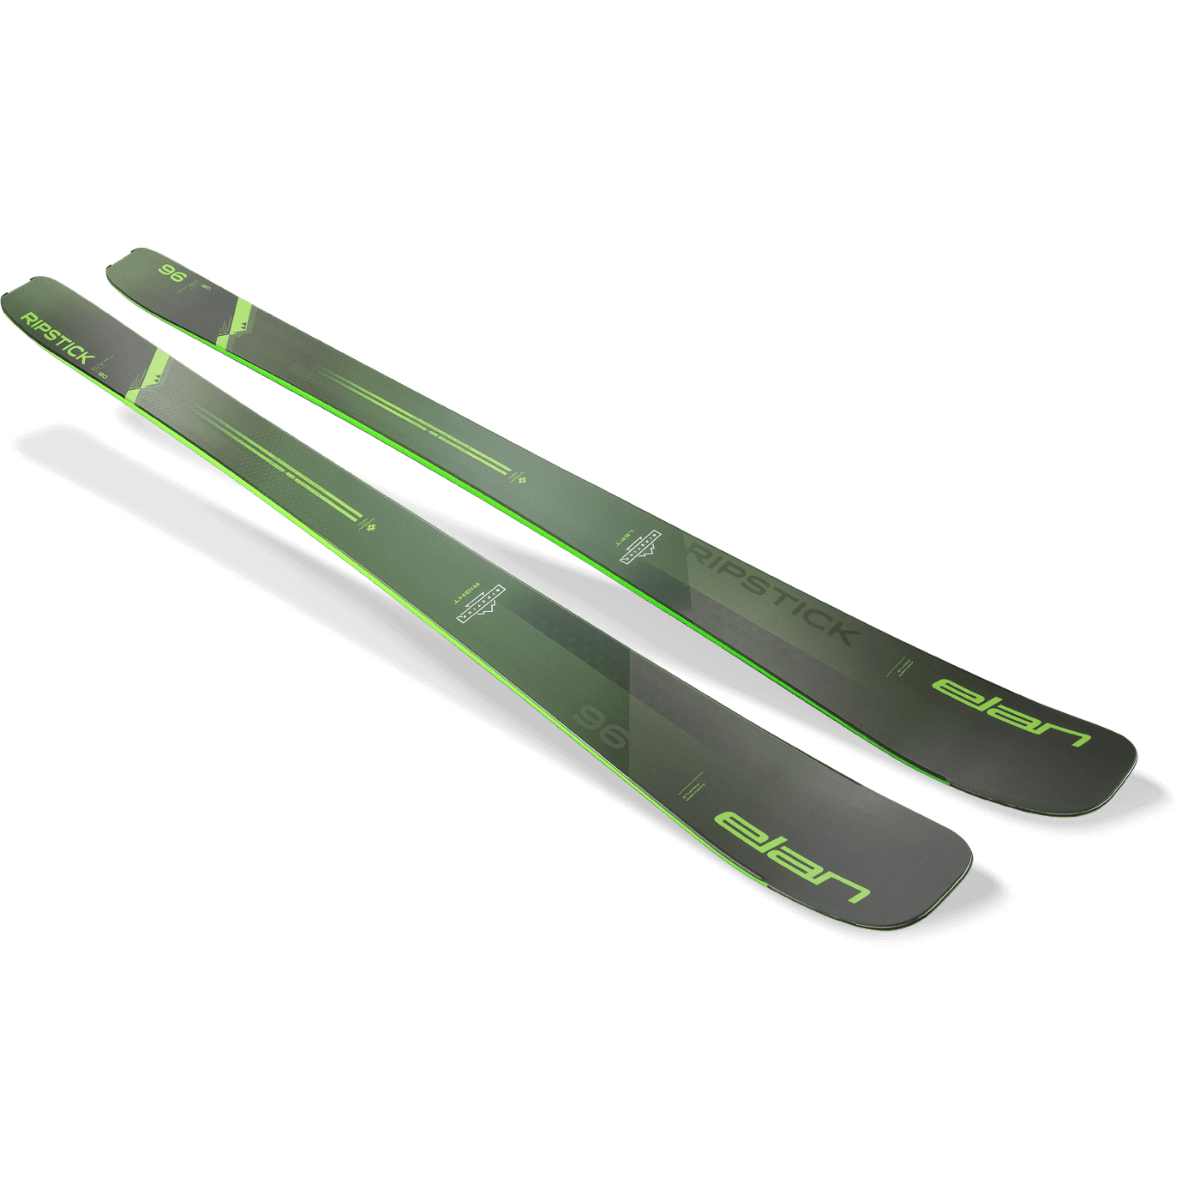 Elan Ripstick 96 Skis · 2023 · 180 cm